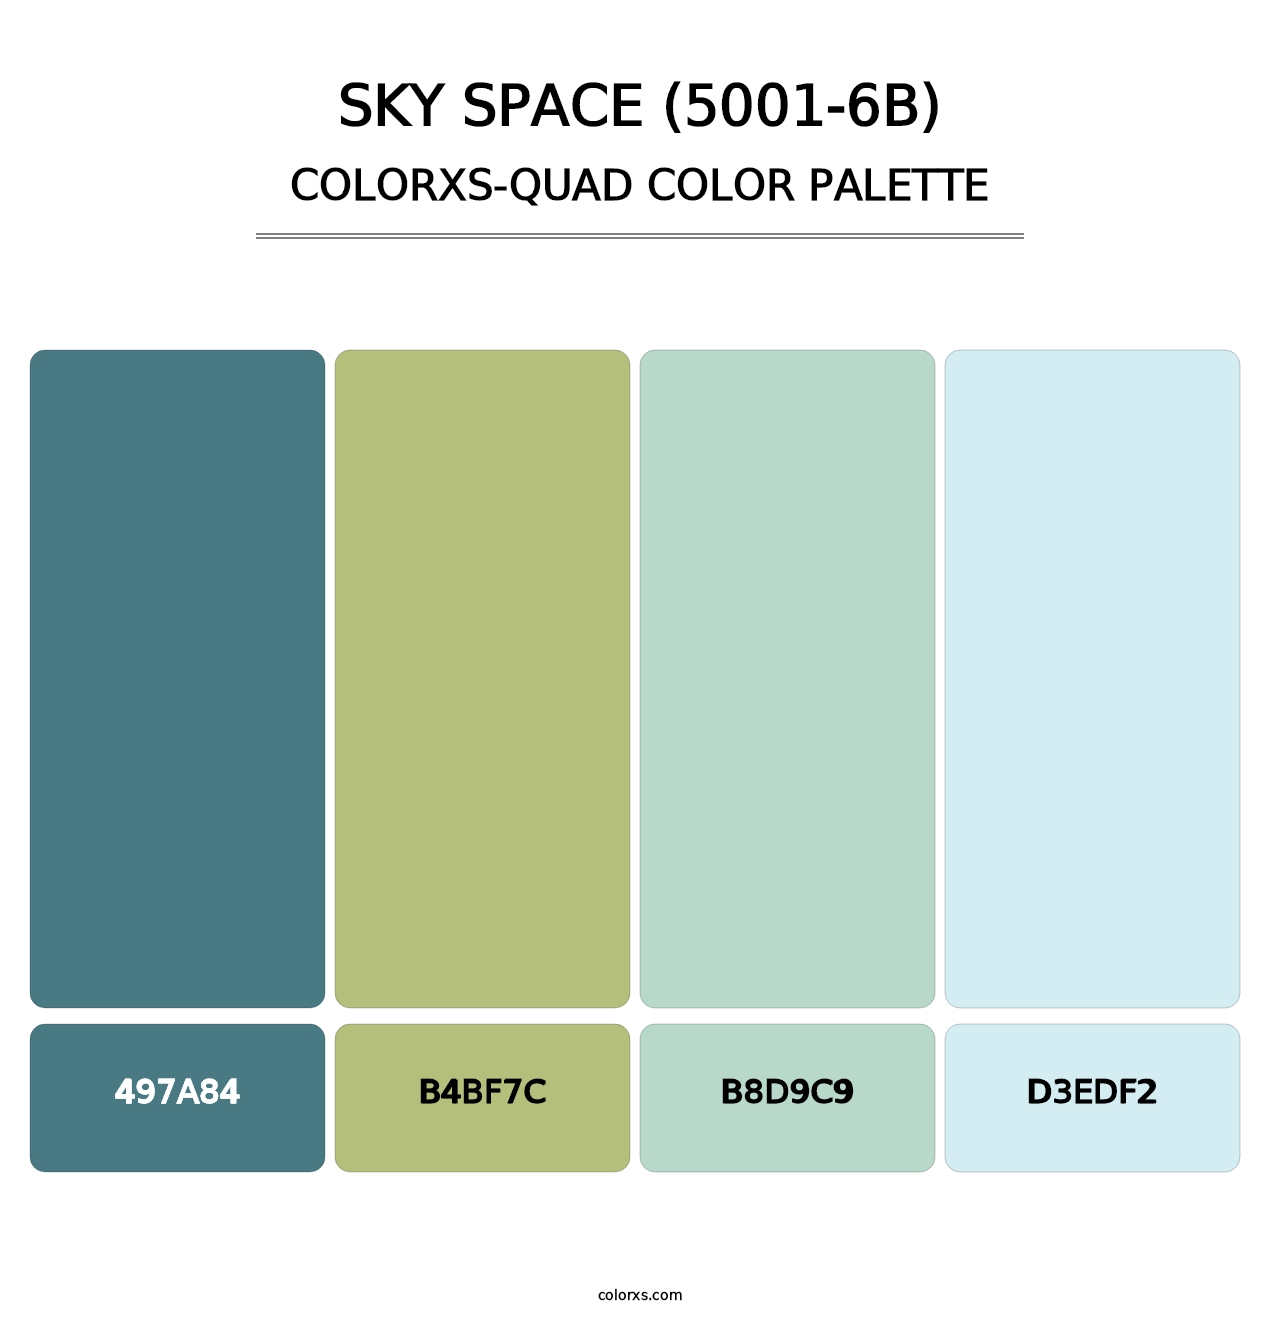 Sky Space (5001-6B) - Colorxs Quad Palette